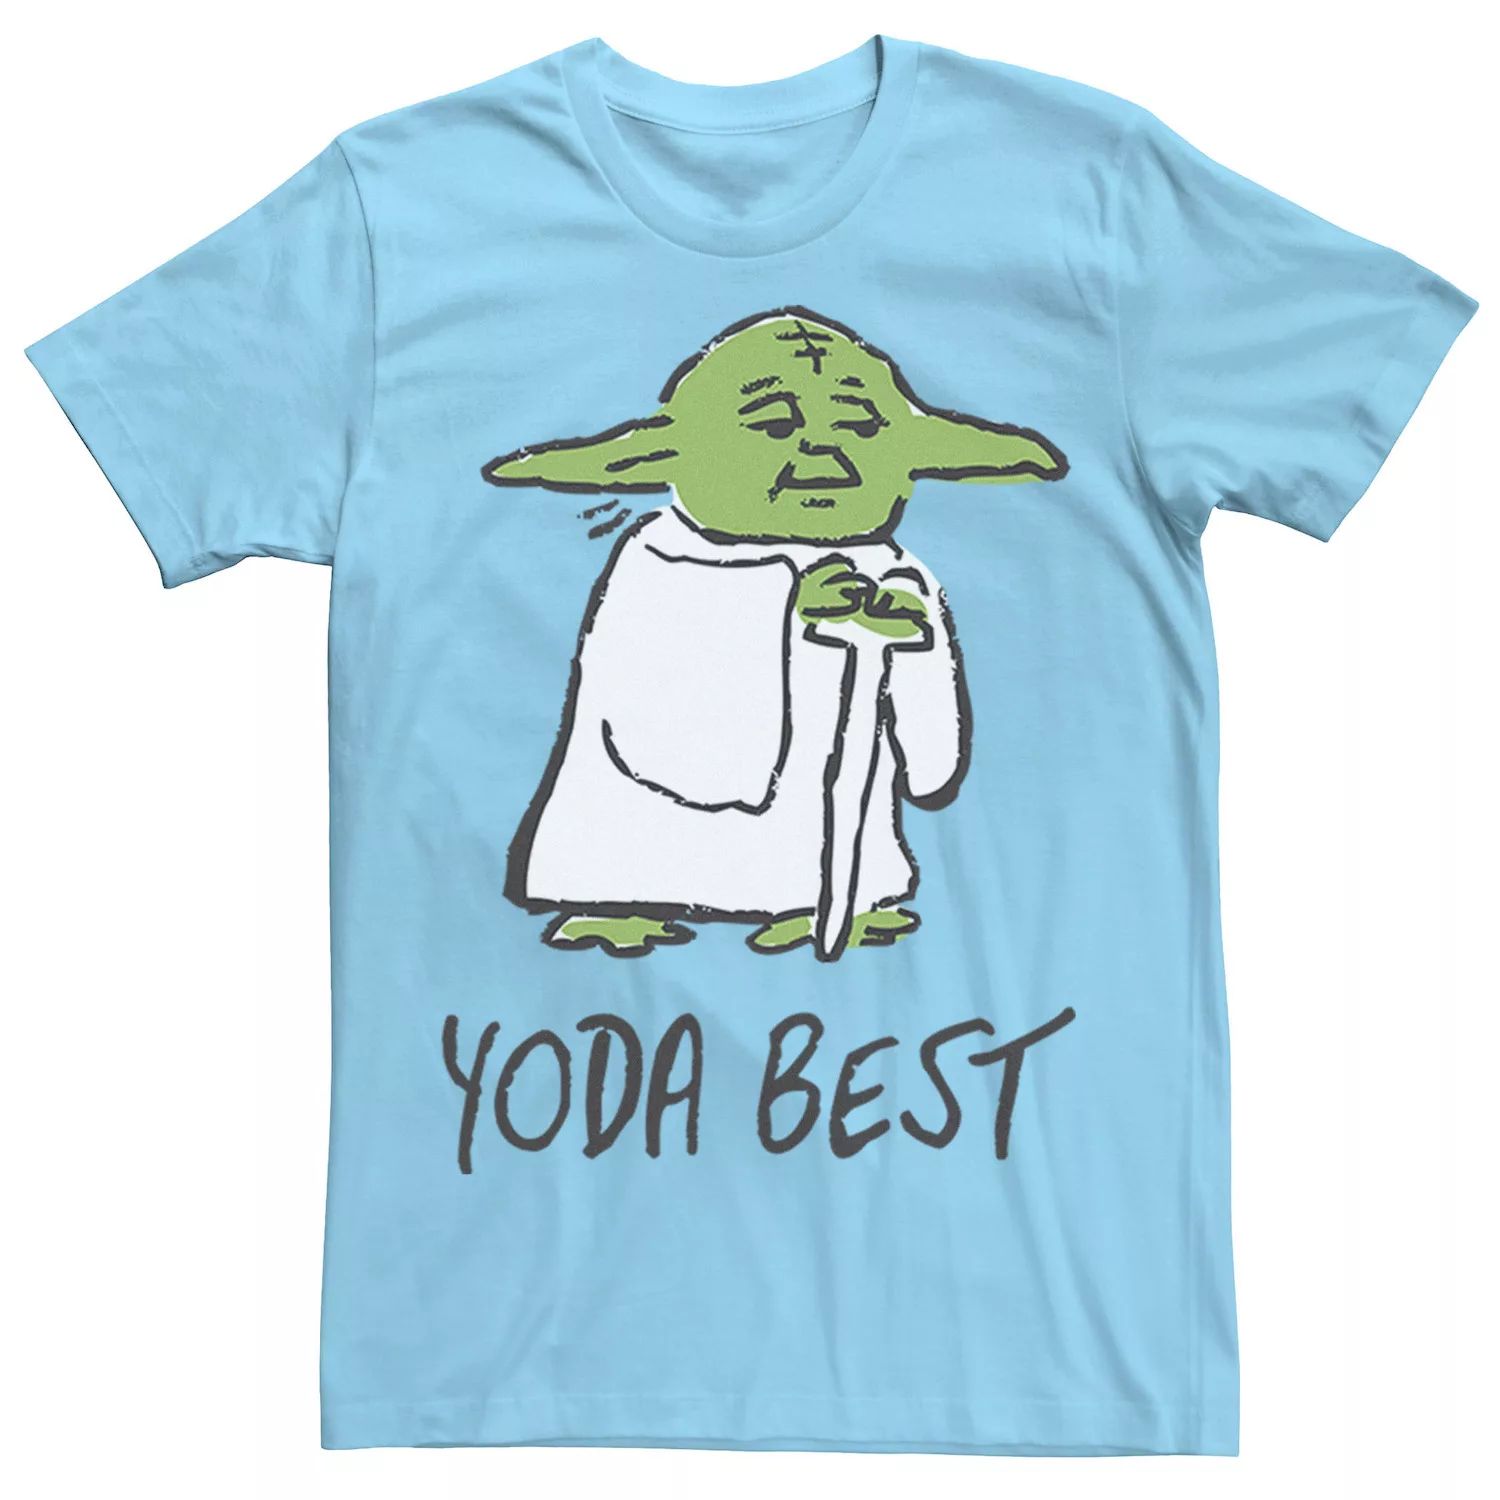 Мужская футболка с лучшим портретным эскизом «Звездные войны Йода» Star Wars, светло-синий sandokey galaxy star light